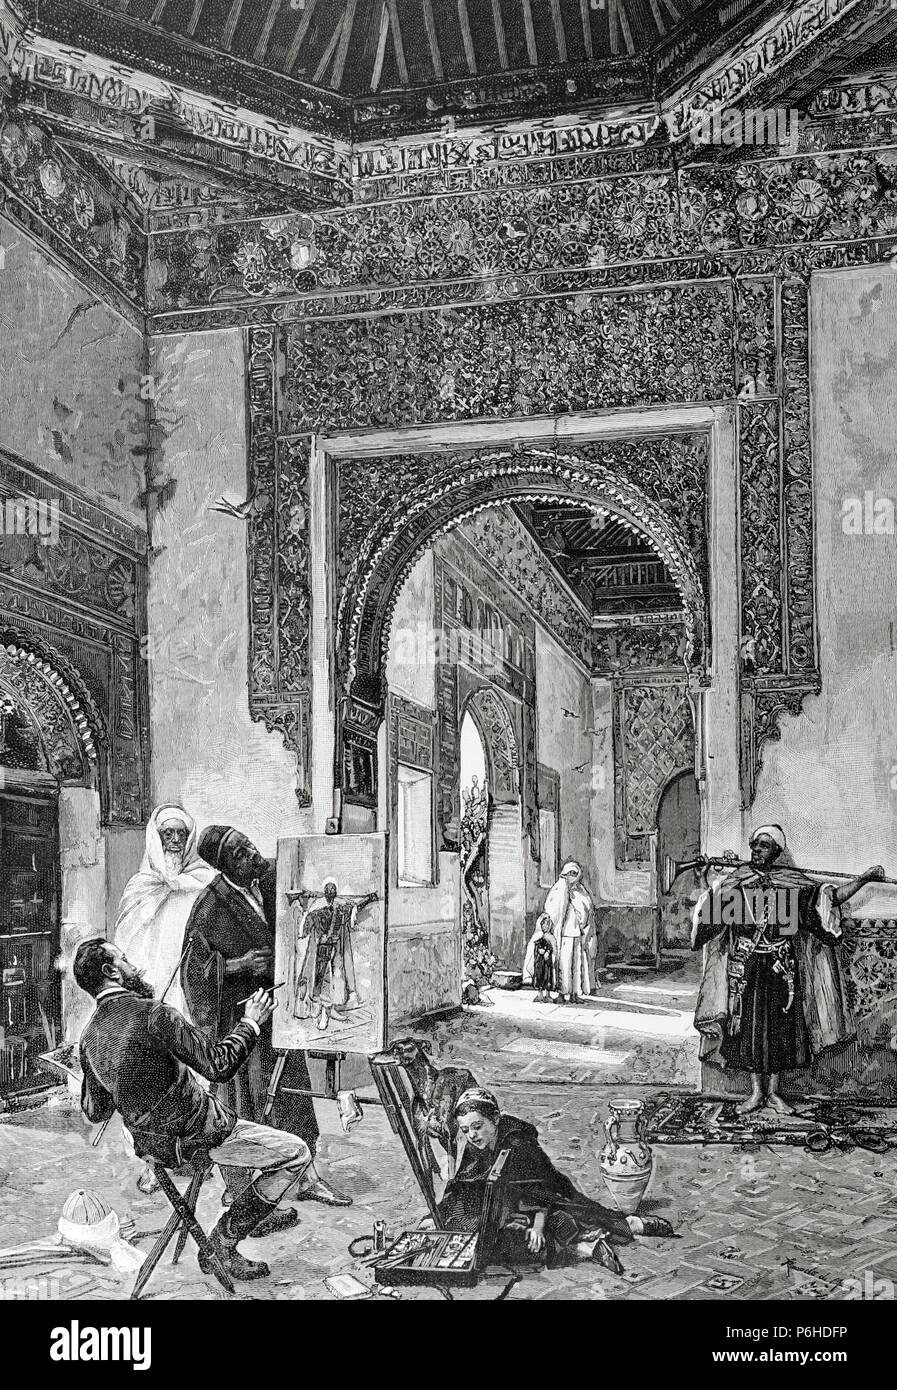 Ricardo Leon Bonnat (années 1851). La Ilustracion Artistica, 1884. Gravure por A. Closs. Reproduit une peinture de Madrazo. Un modèle arabe. Banque D'Images